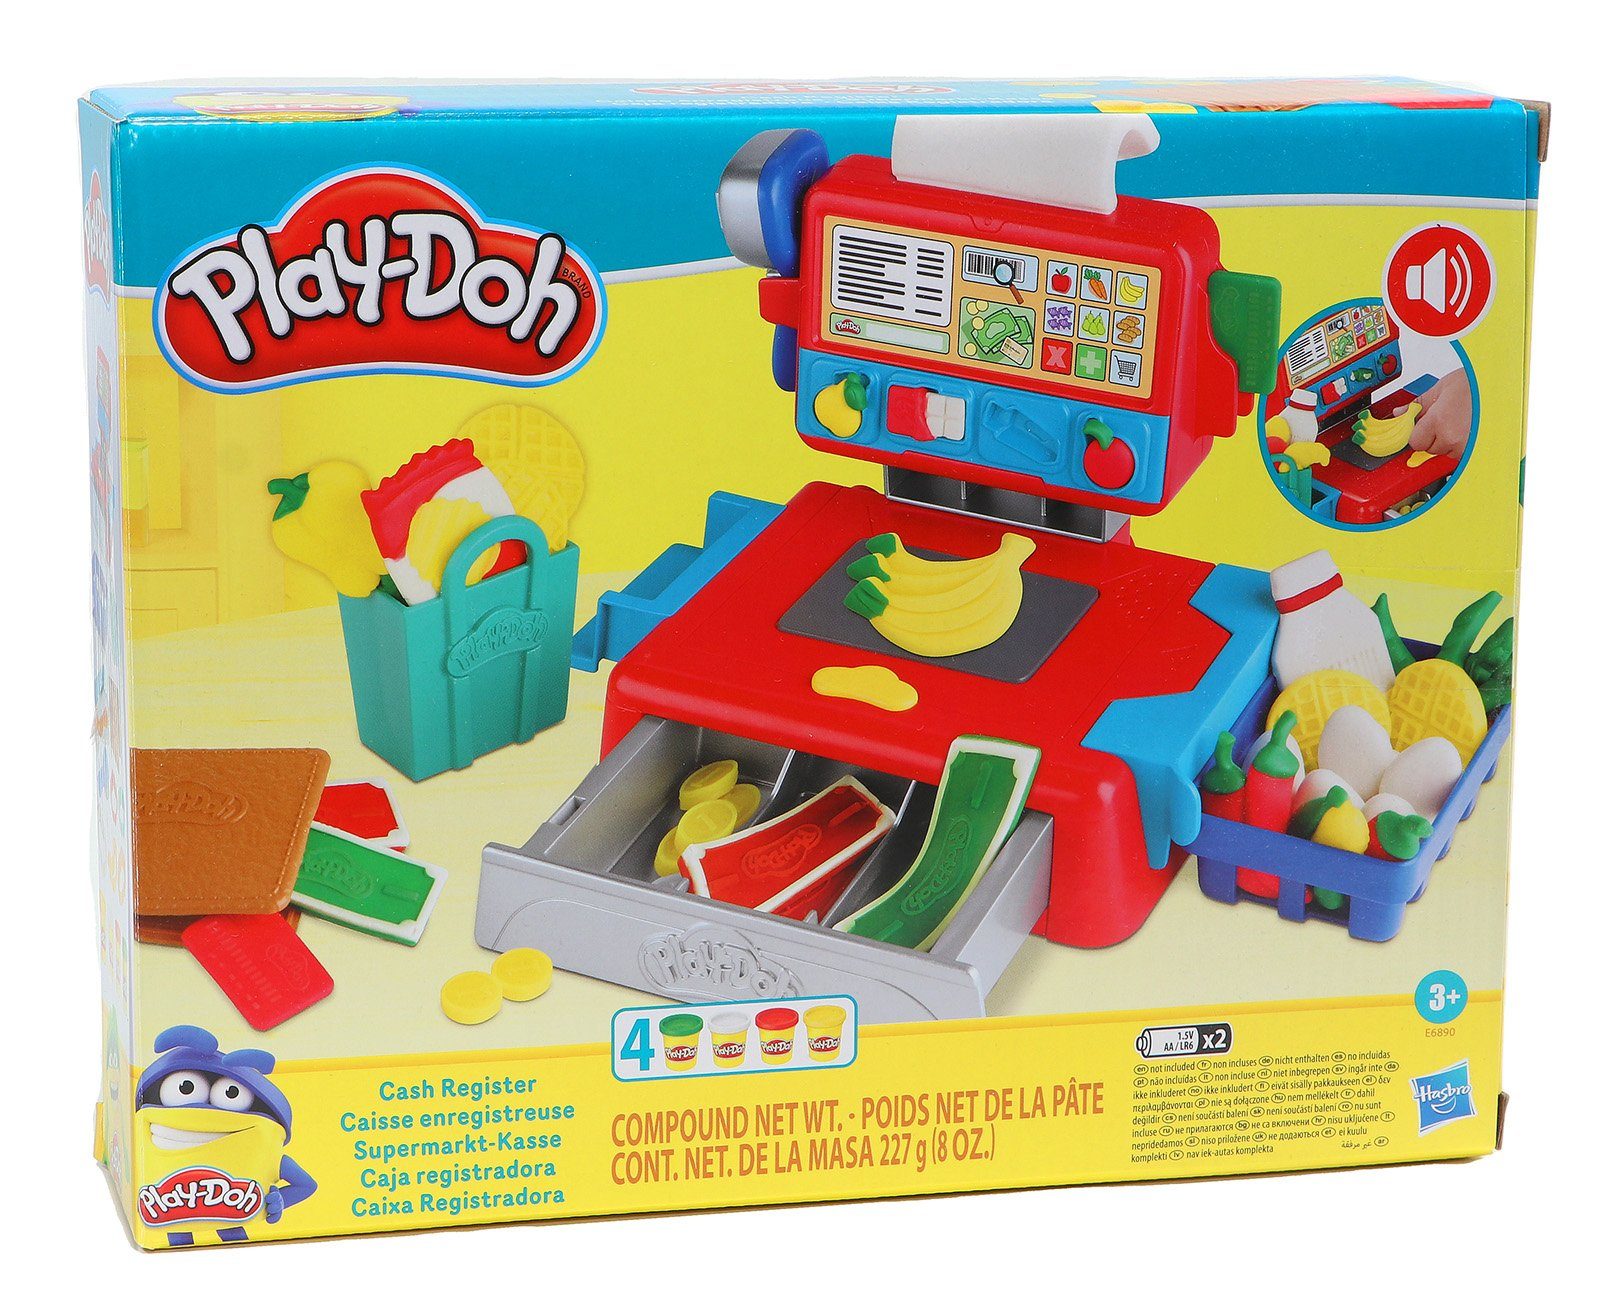 Play-Doh Knete »Play-Doh Supermarkt-Kasse« (siehe Beschreibungstext)